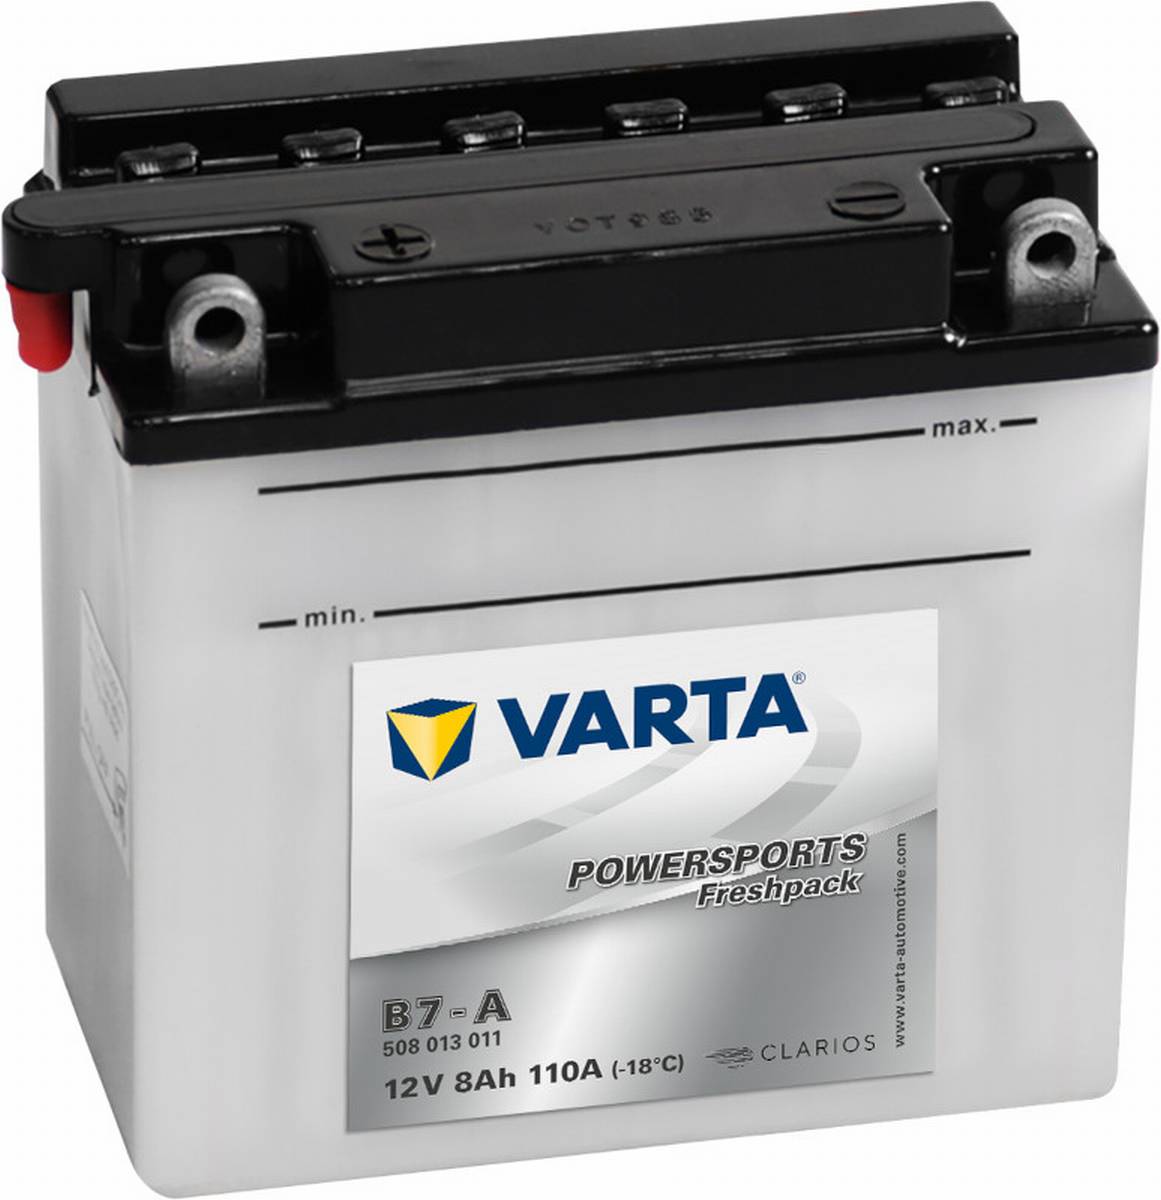 Varta Powersports Freshpack B7-A Motorrad Batterie 508013011 12V 8Ah 110A, Starterbatterie, Motorrad, Kfz, Batterien für